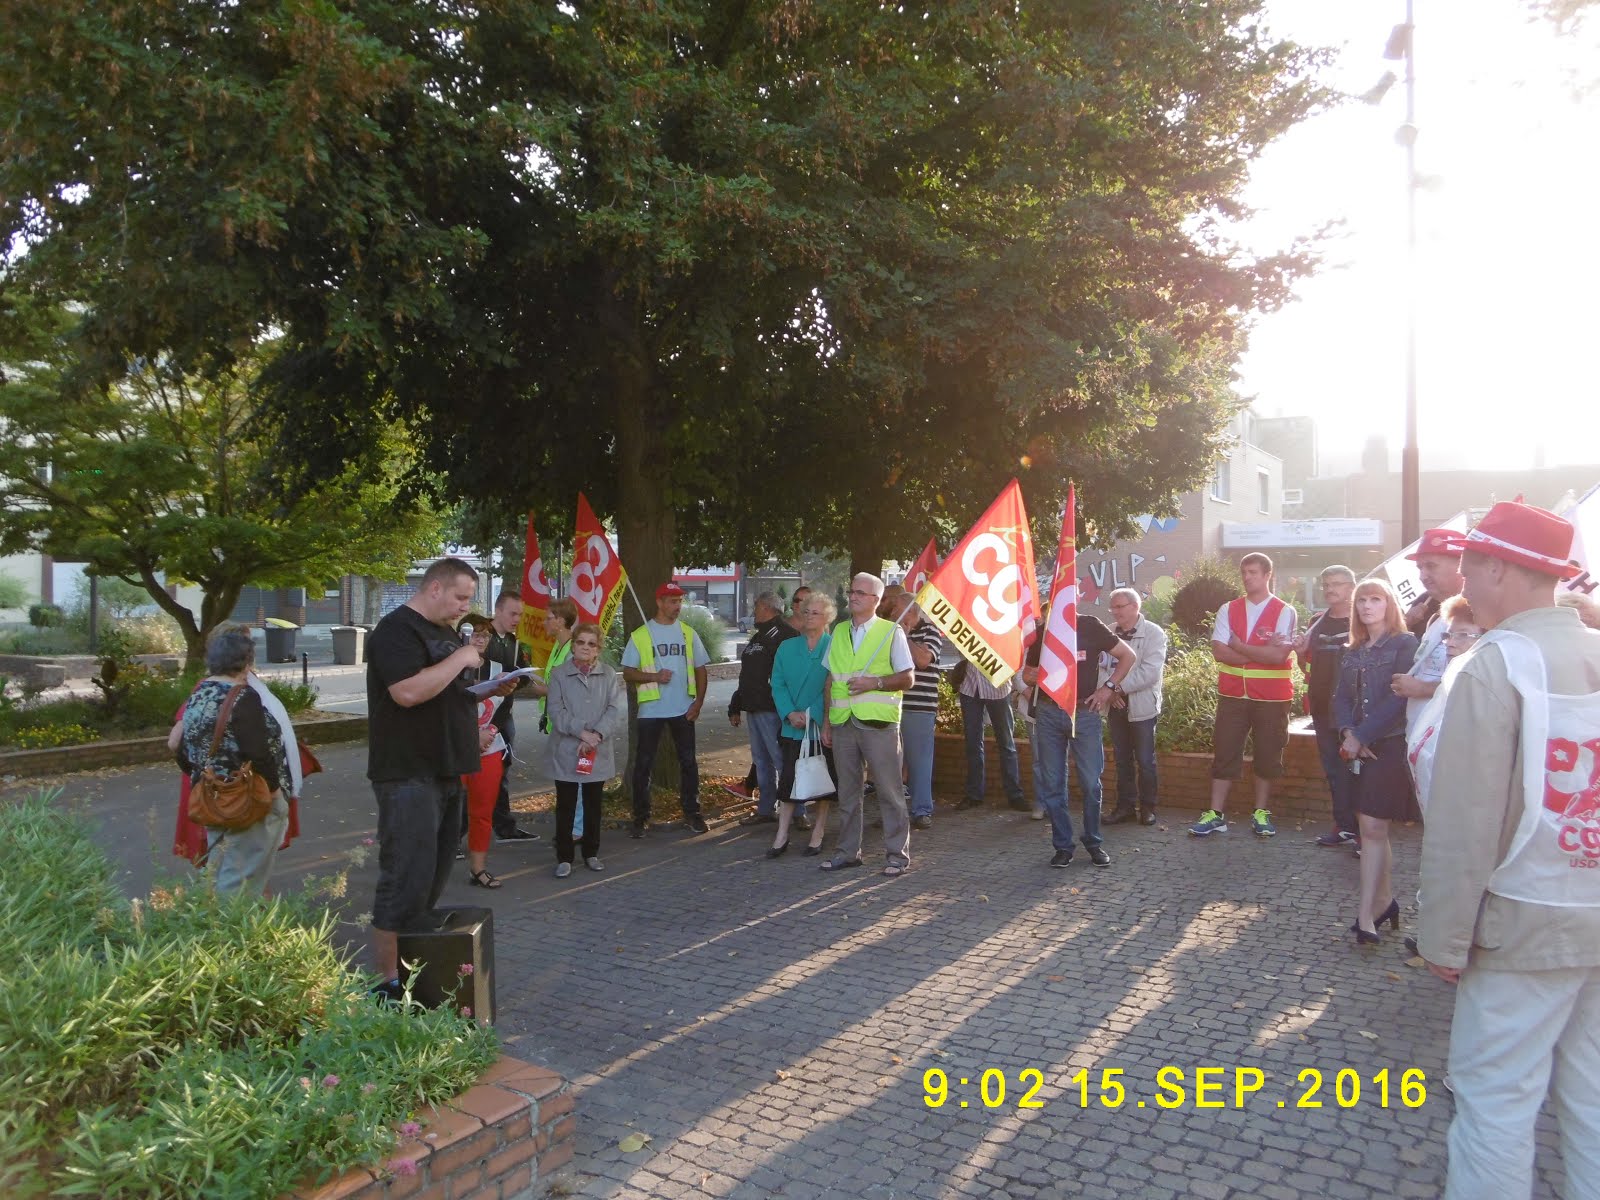 Rassemblement parvis de la mairie de Denain le 15 septembre au matin pour le retrait de la loi El'K